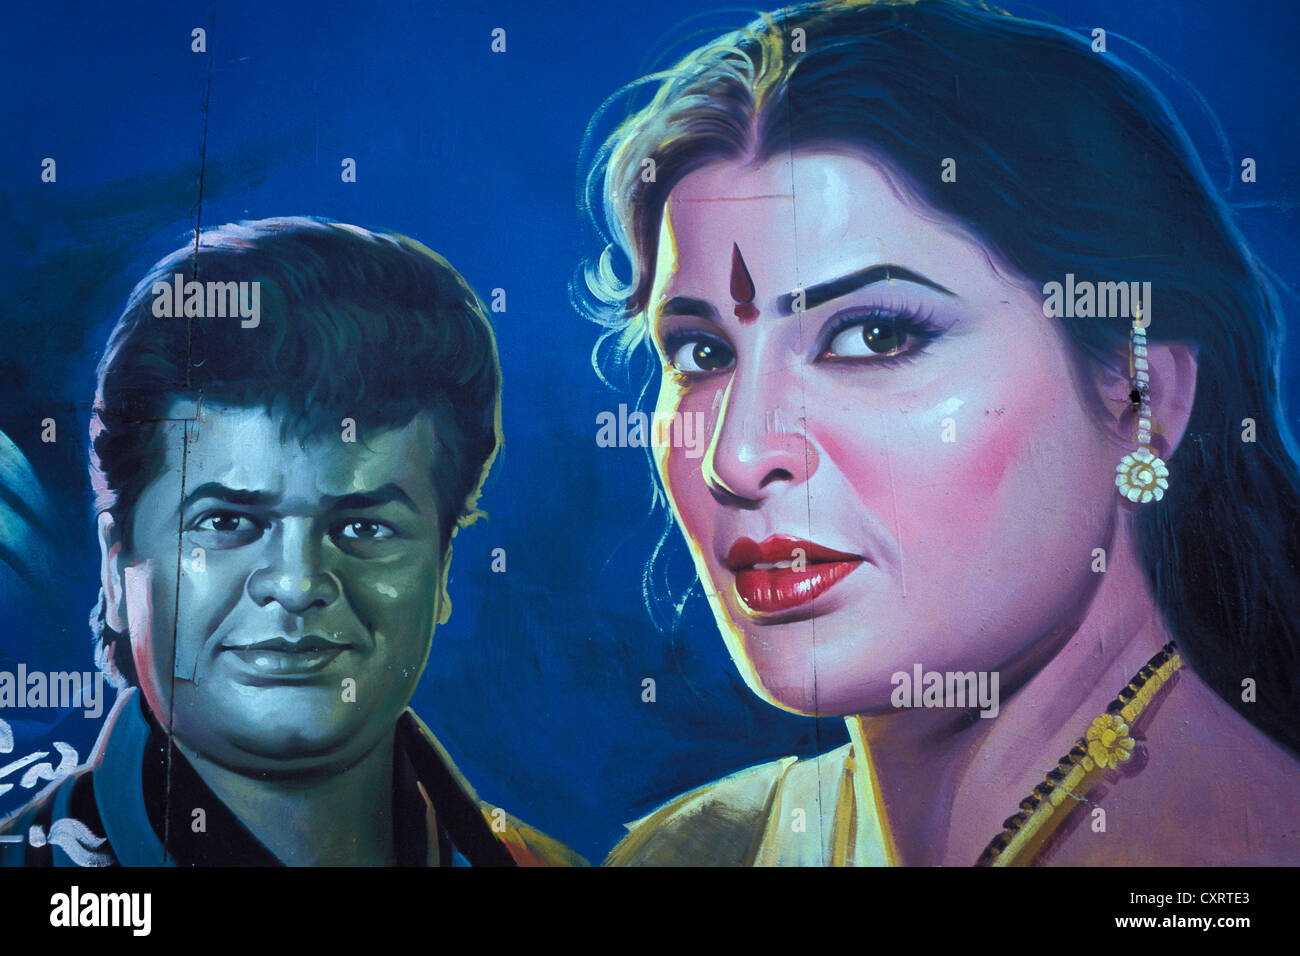 Les acteurs de Bollywood, portrait, affiche de film peint à la main, Bangalore, Karnataka, Inde du Sud, Inde, Asie Banque D'Images